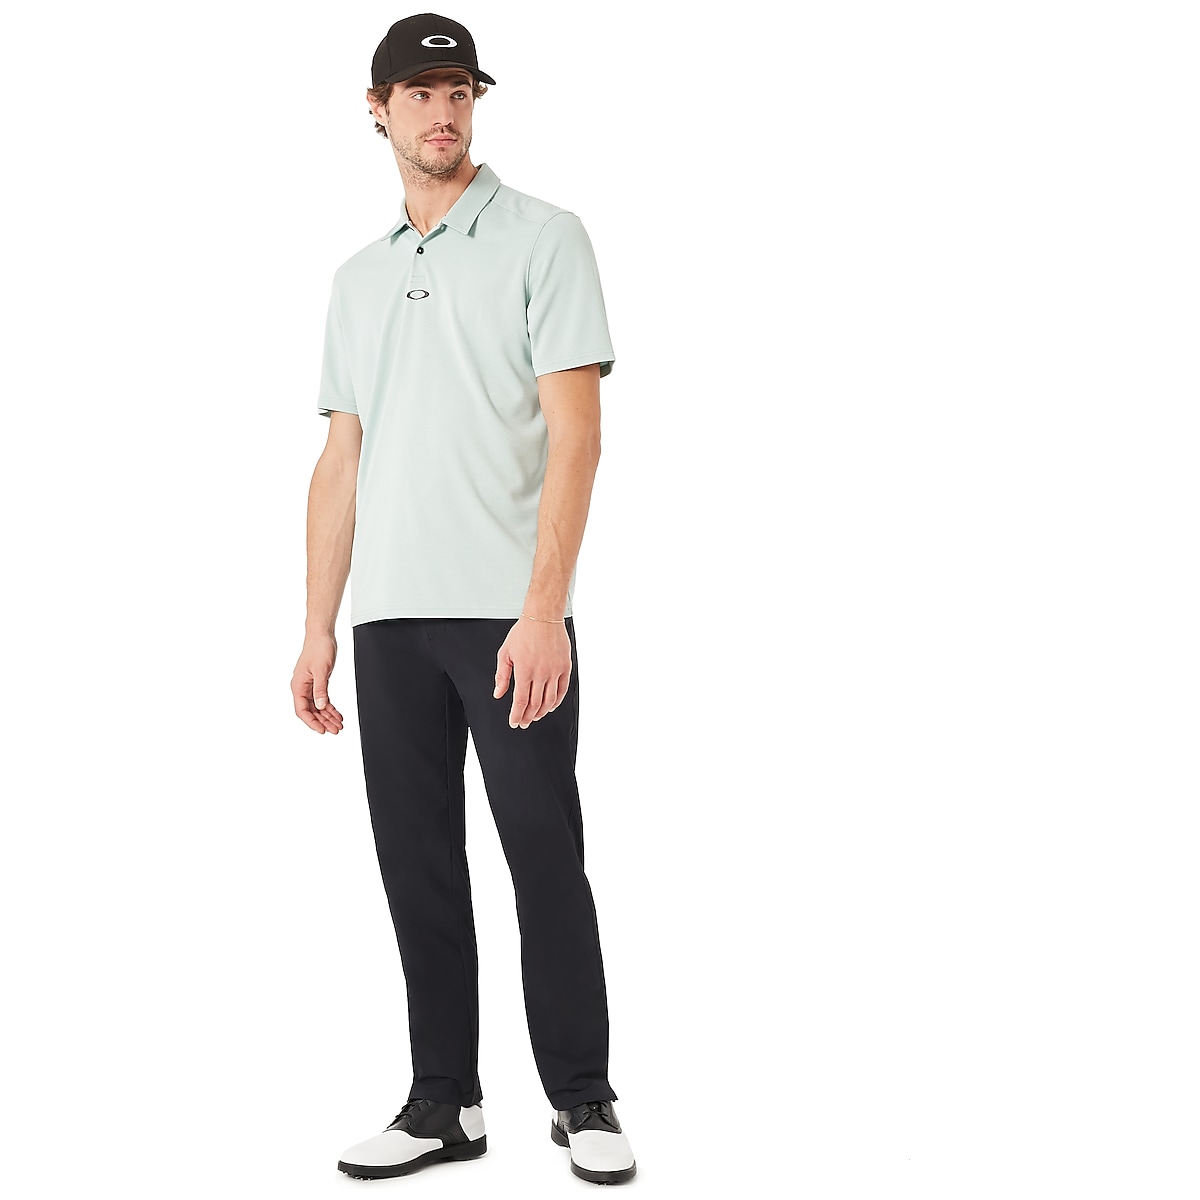 Oakley Golf Ellipse Hat - Jet Black | Oakley US Store